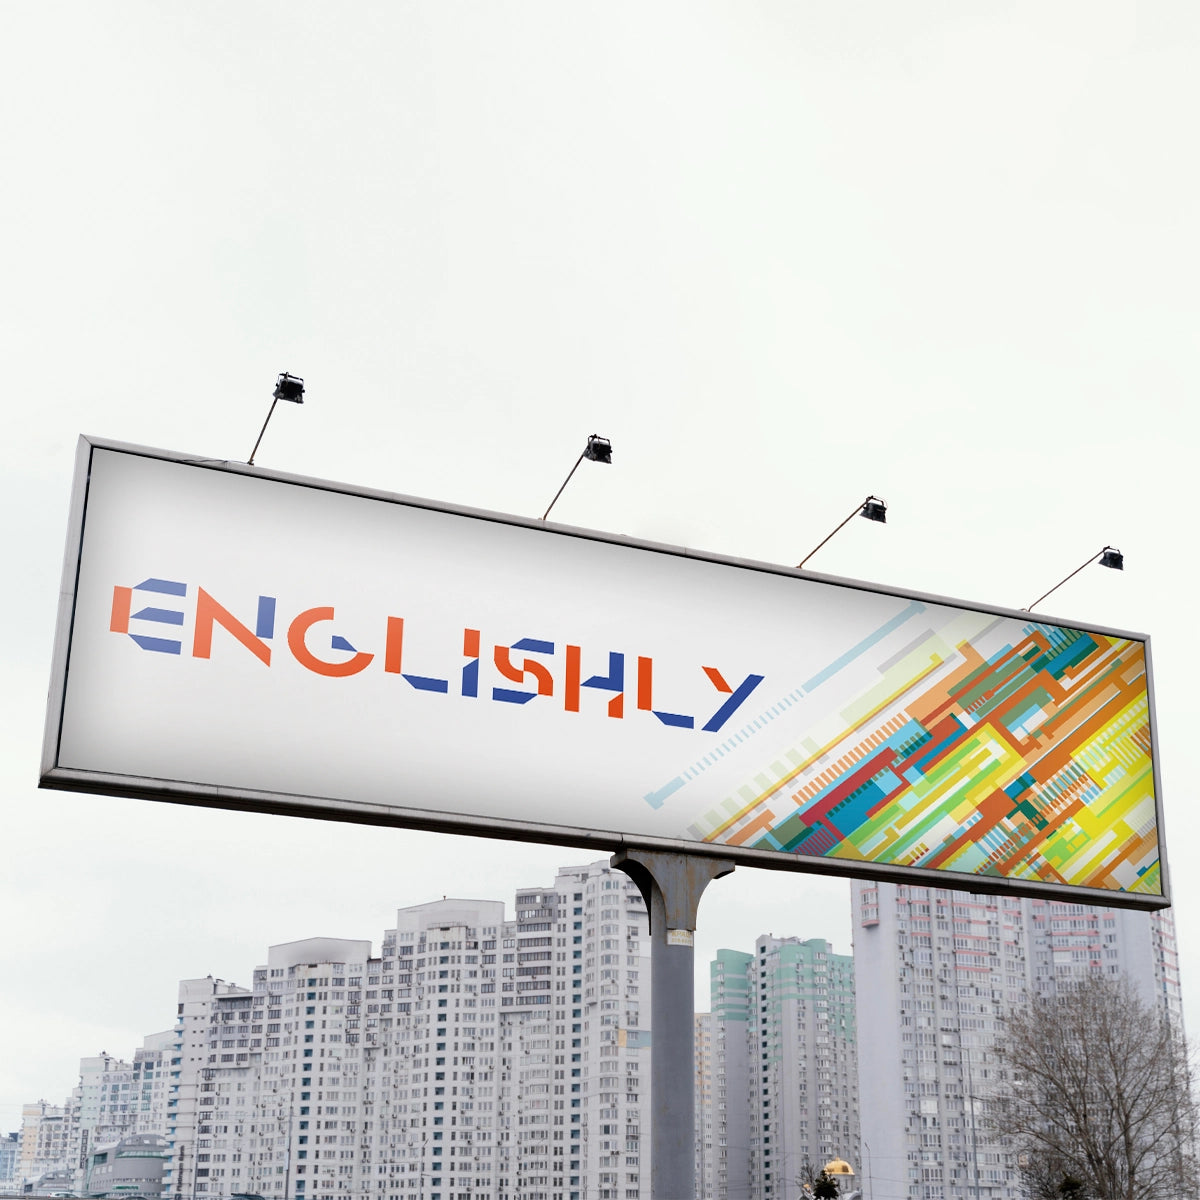 Englishly.com